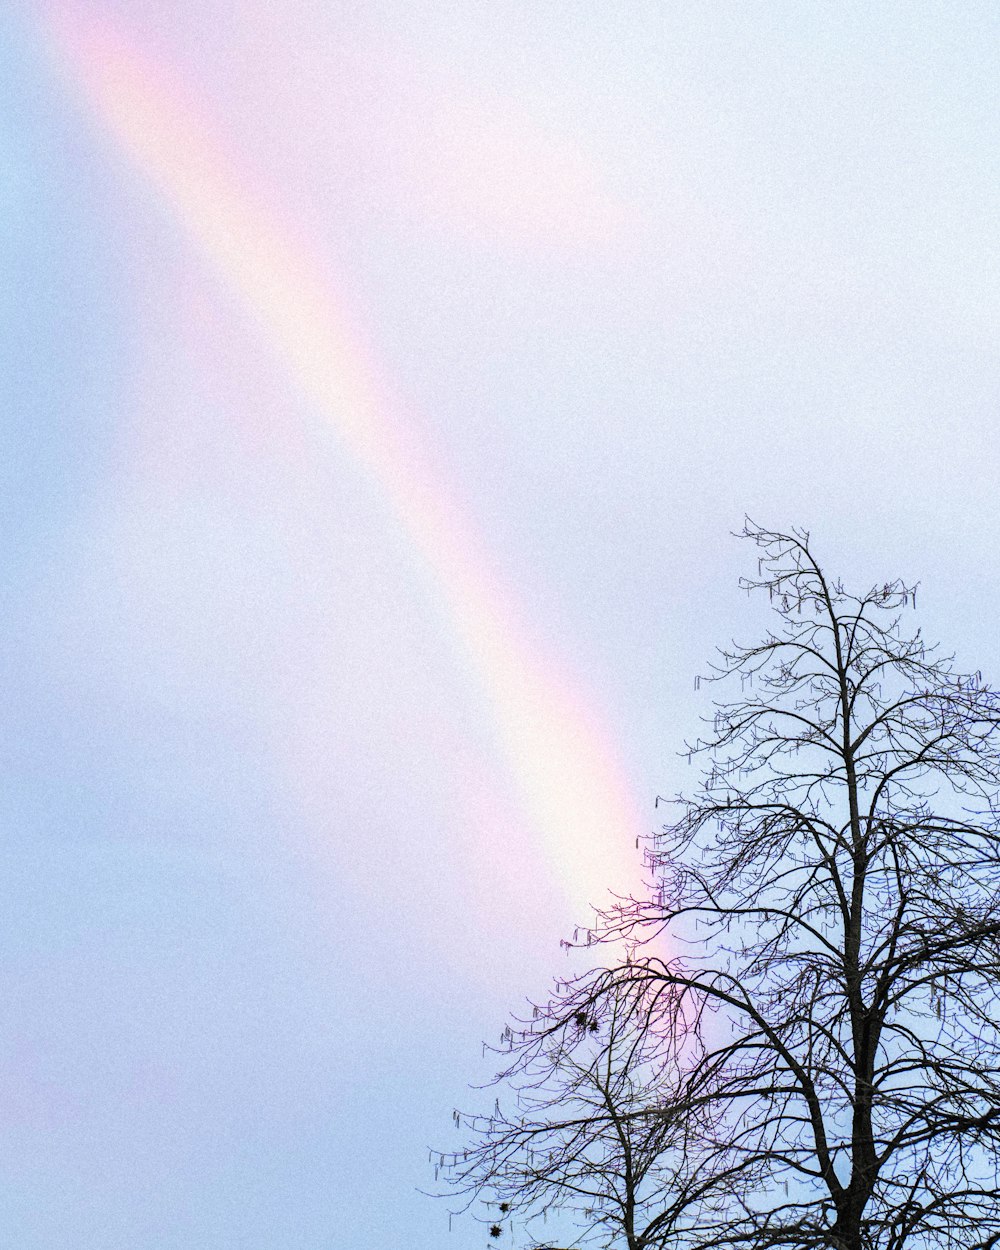 a rainbow in the sky